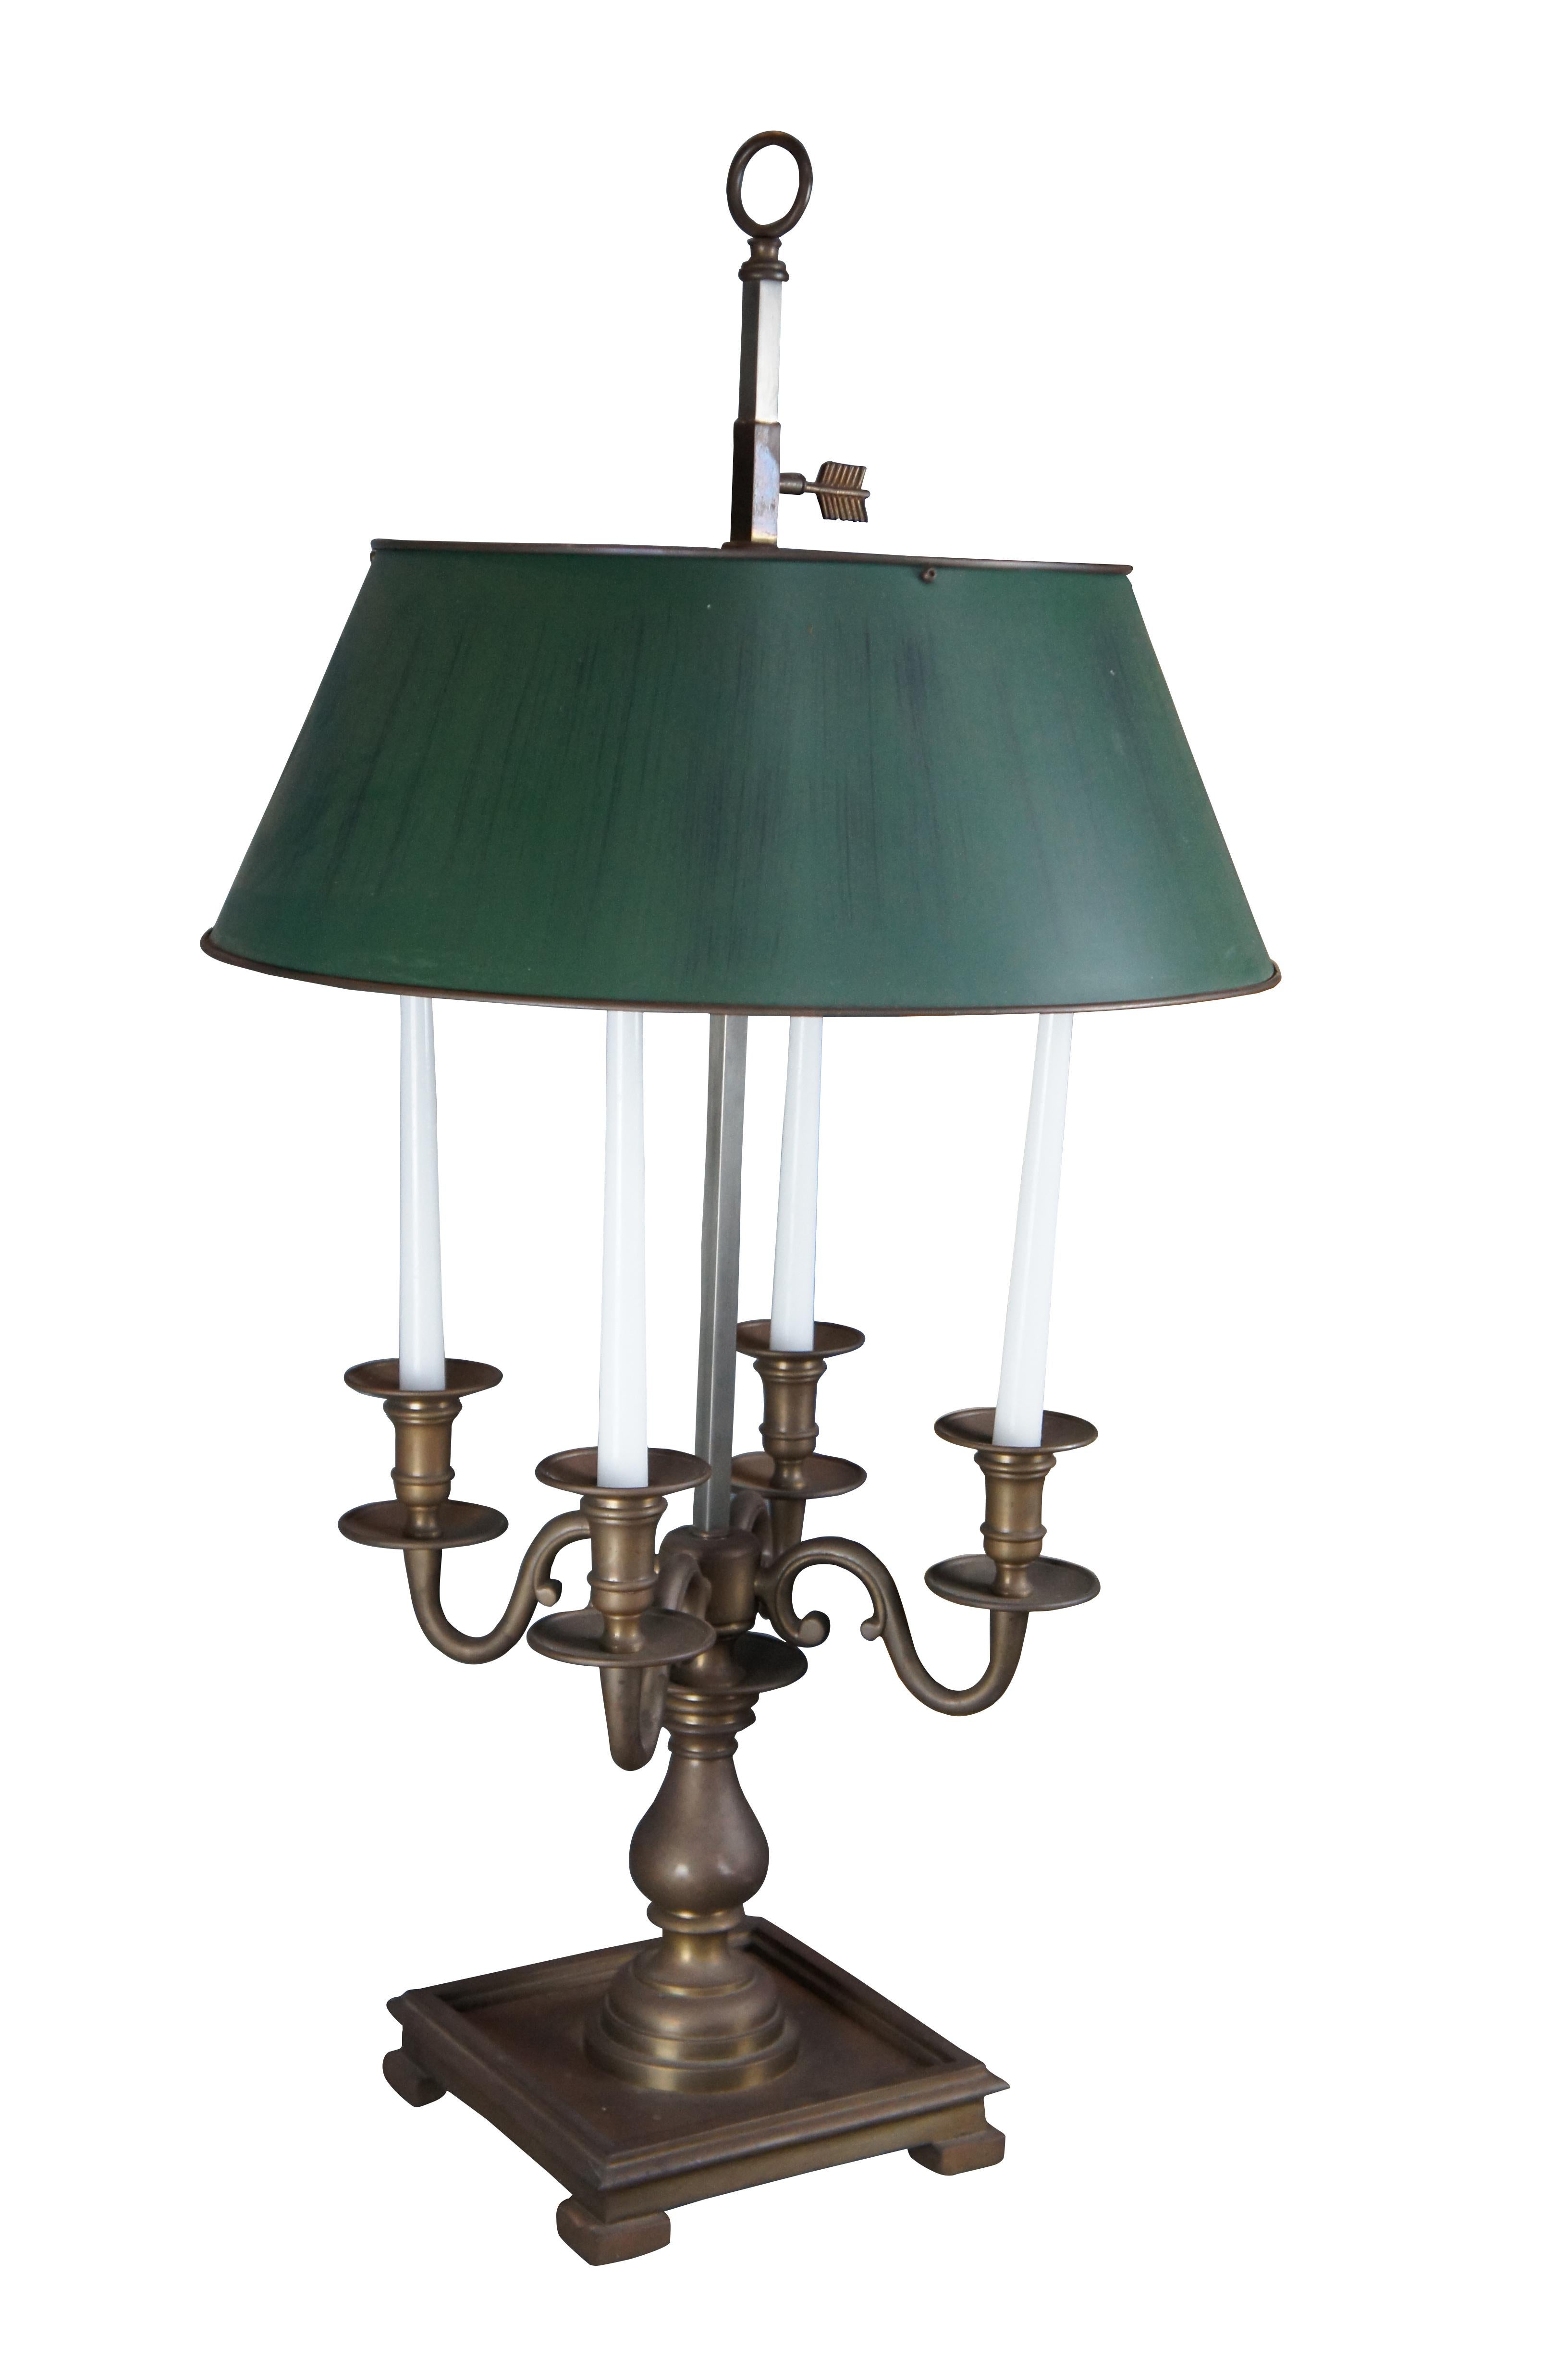 Grande et impressionnante lampe Bouillotte d'inspiration française de la fin du 20ème siècle par Visual Comfort. Elle comporte un candélabre à quatre bras sur un support en forme de balustre et une base à pieds carrés. La lampe se compose d'une